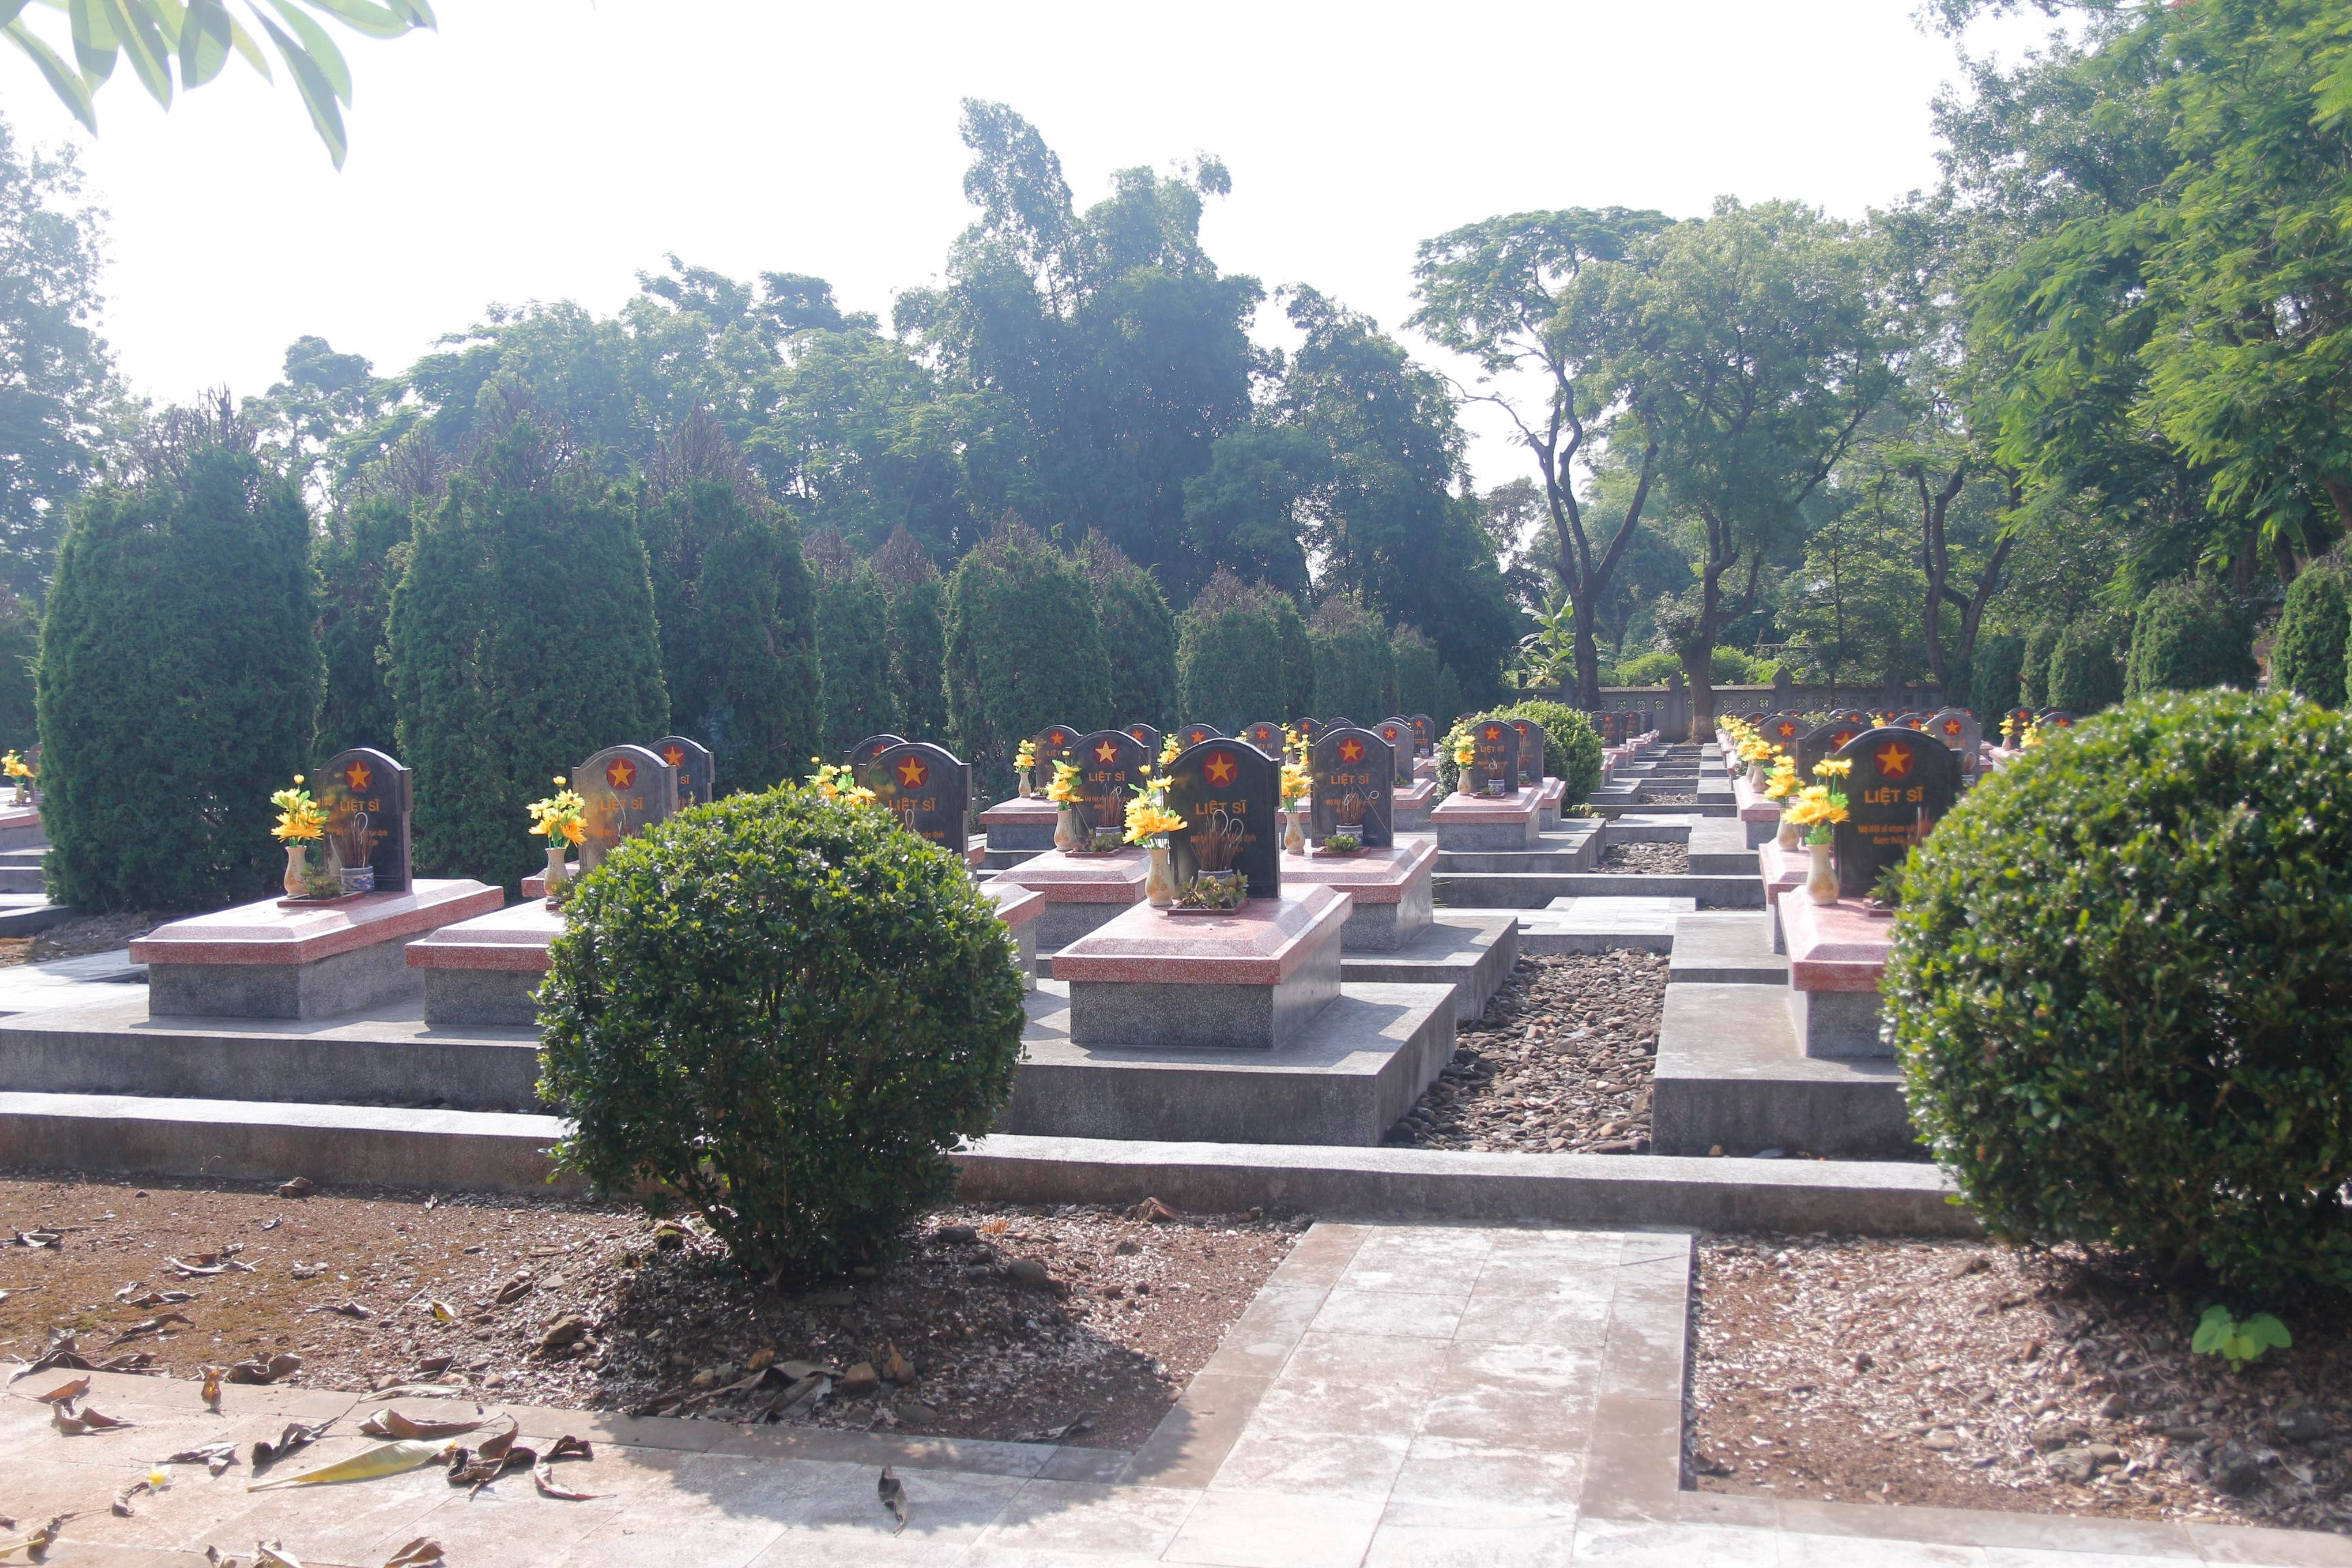 Nghĩa trang Độc lập nơi có 2.432 ngôi mộ được xây dựng năm 1958 trên cứ điểm đồi độc lập. Hầu như các ngôi mộ ở đây đều không có tên, tất cả các liệt sỹ đều tham gia chiến dịch Điện Biên Phủ.